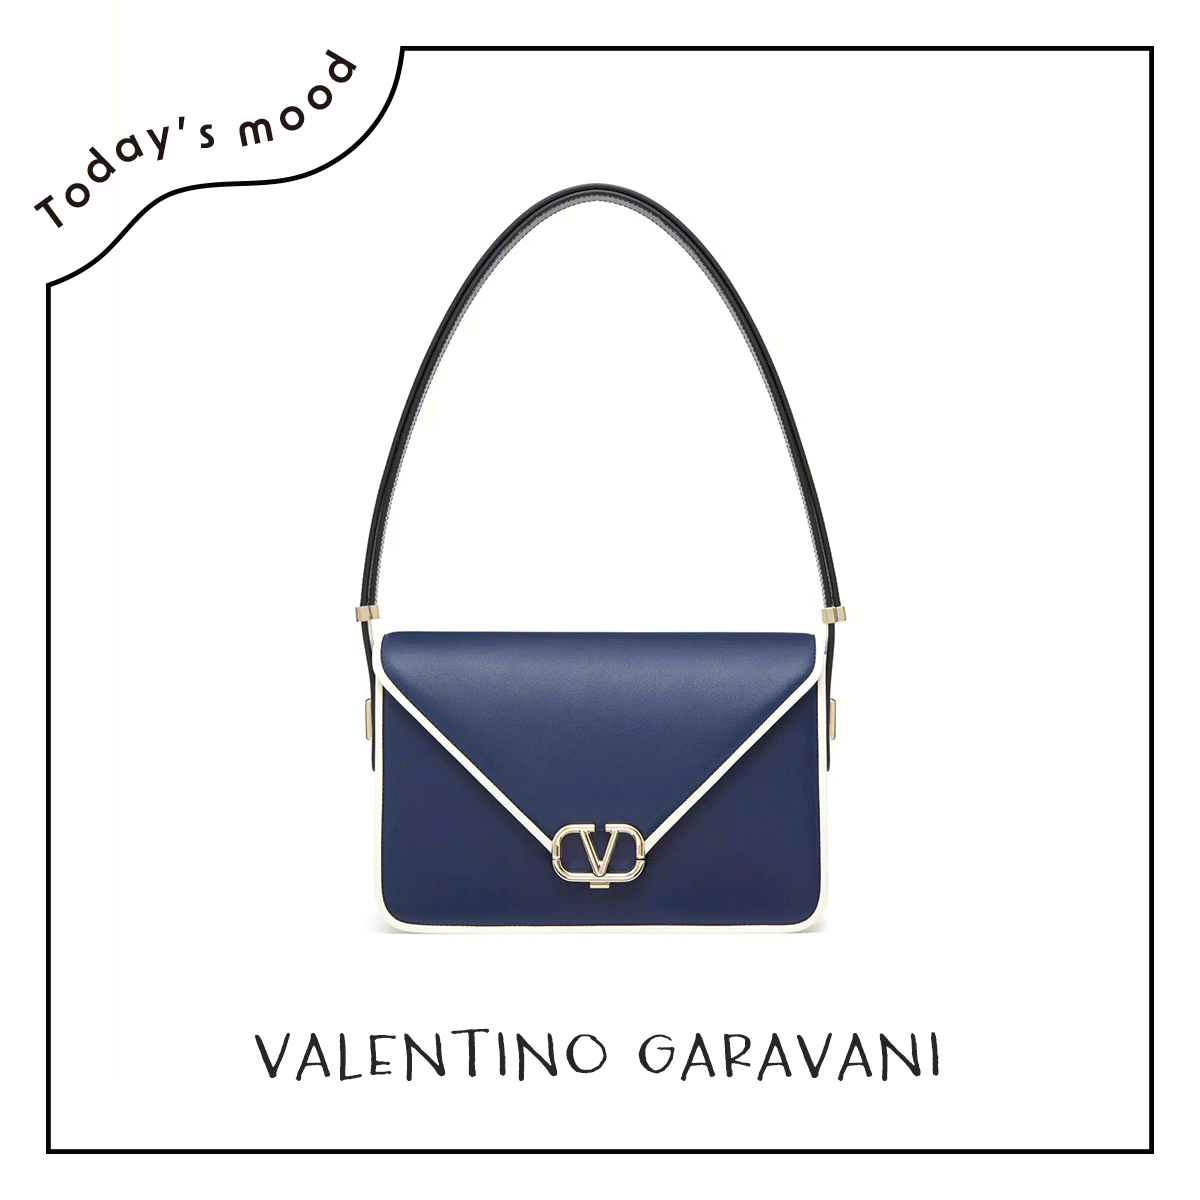 ヴァレンティノ ガラヴァーニのバッグ【昼下がりのごきげんワードローブ】